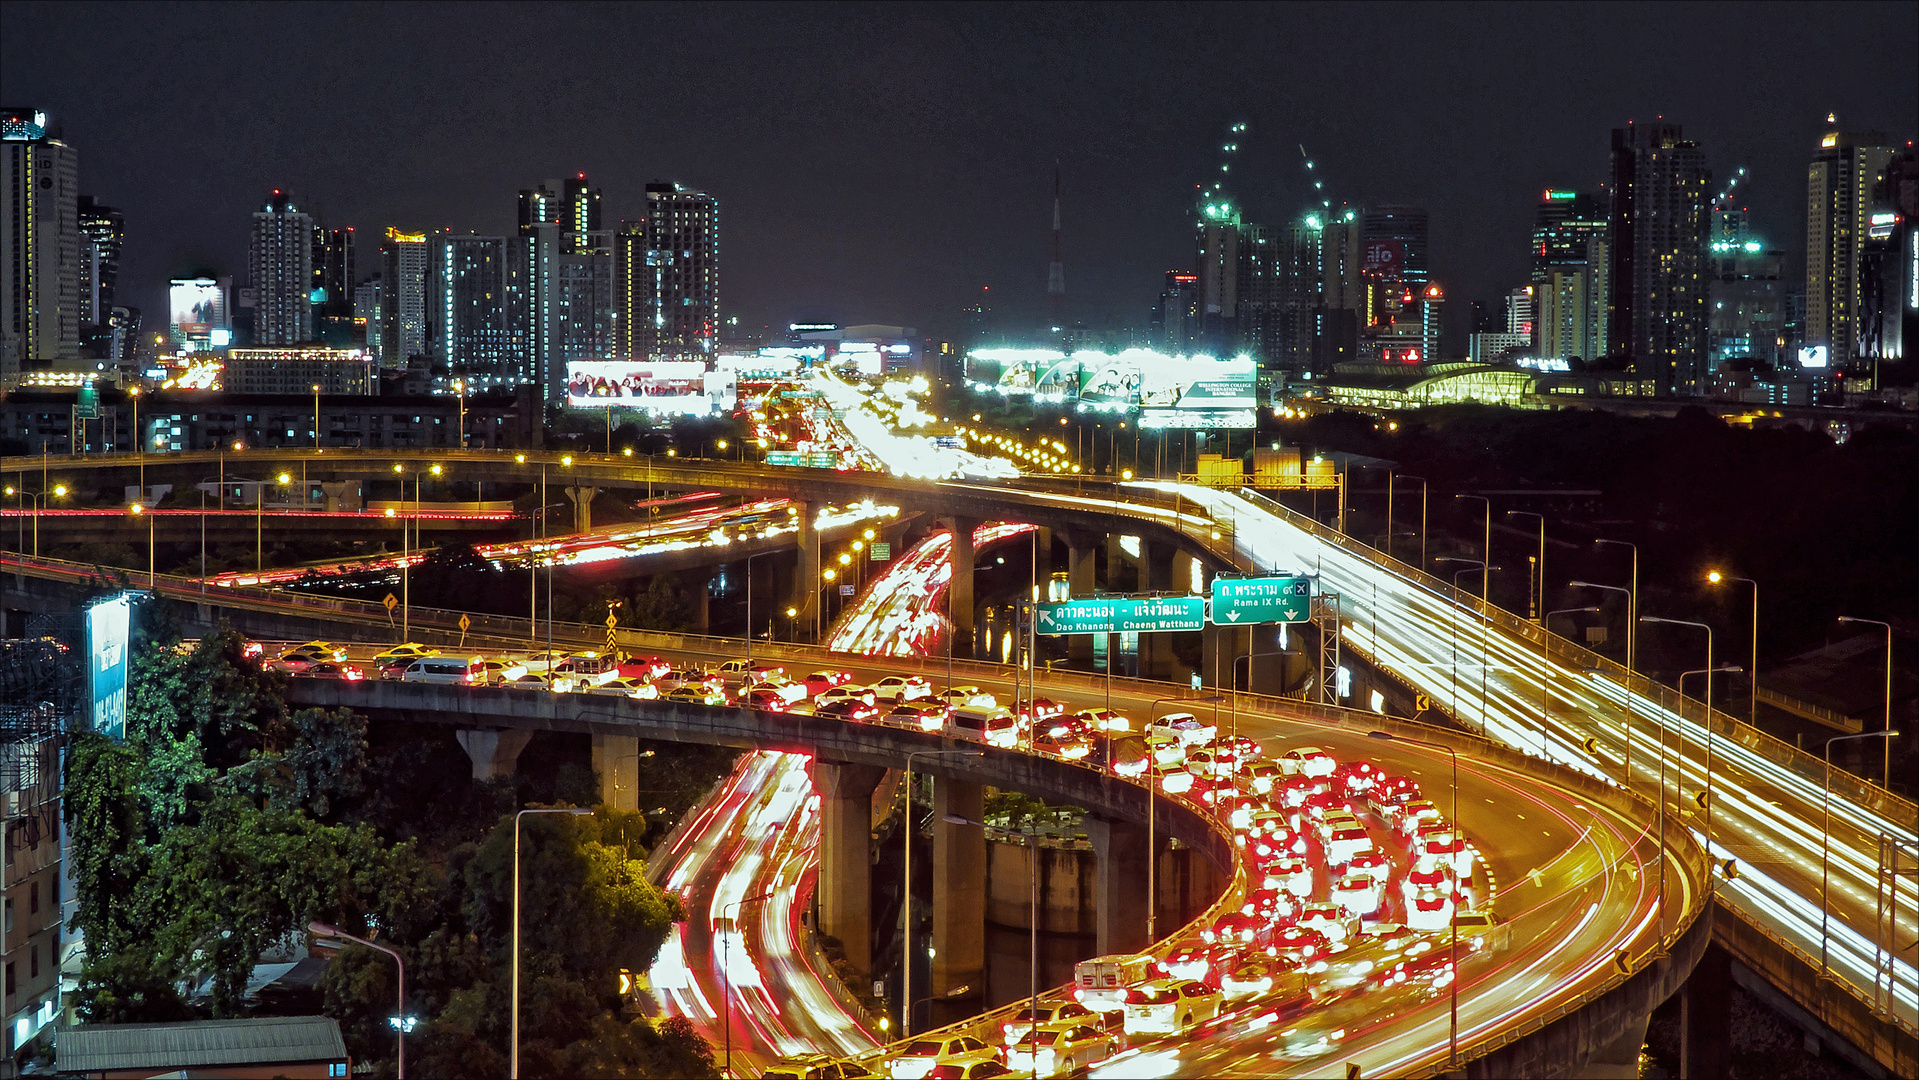 Bangkok Highway